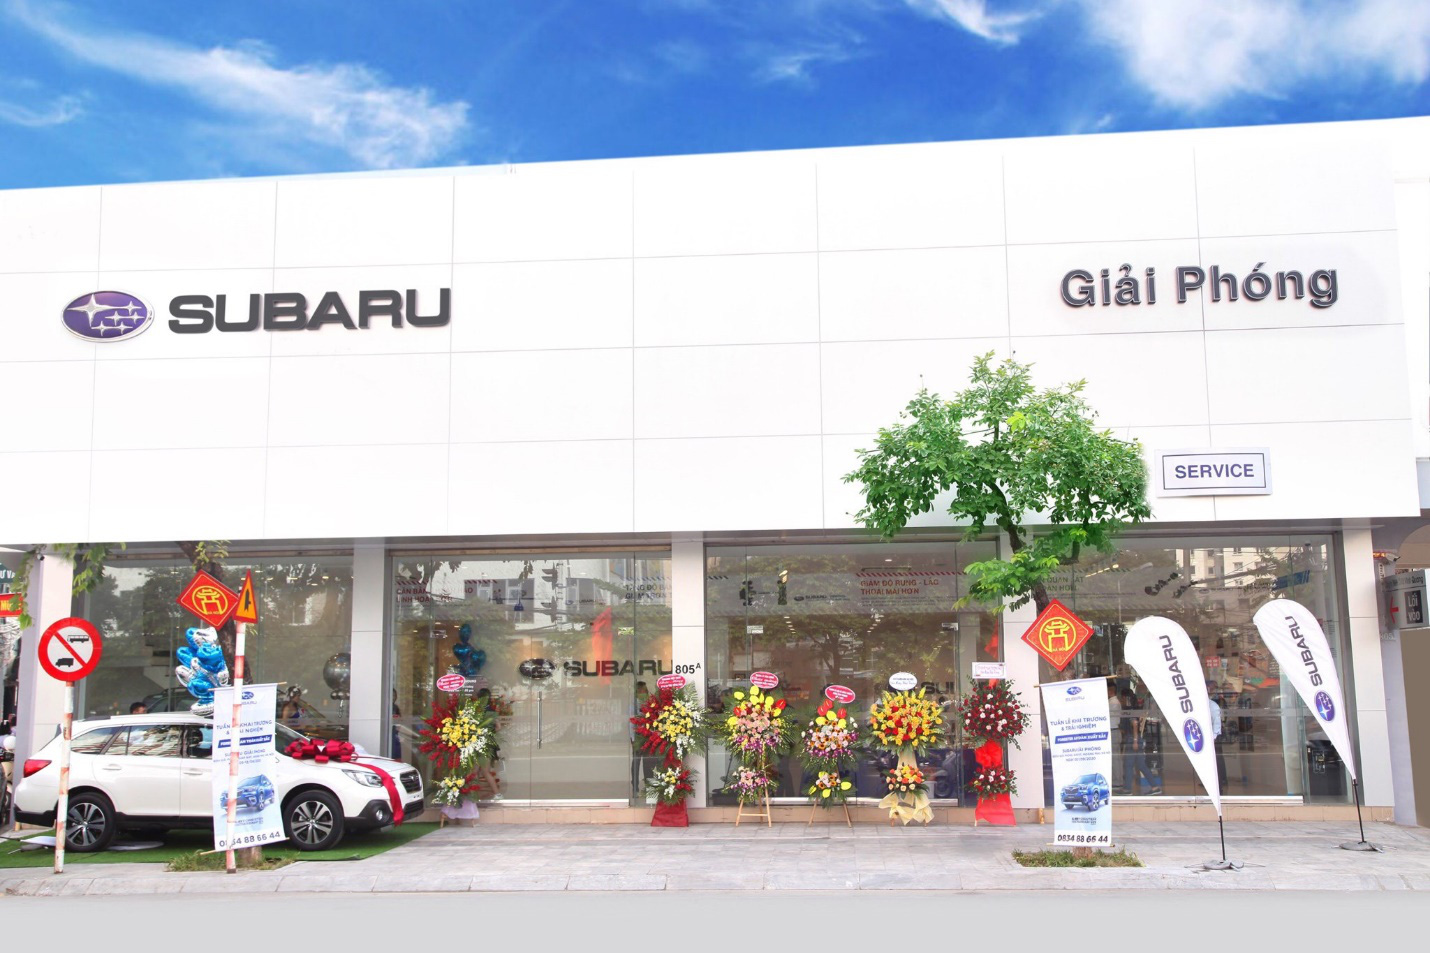 Giảm giá xe hơn 250 triệu chưa đủ, Subaru quyết mở rộng thị phần bằng đại lý mới ở Hà Nội